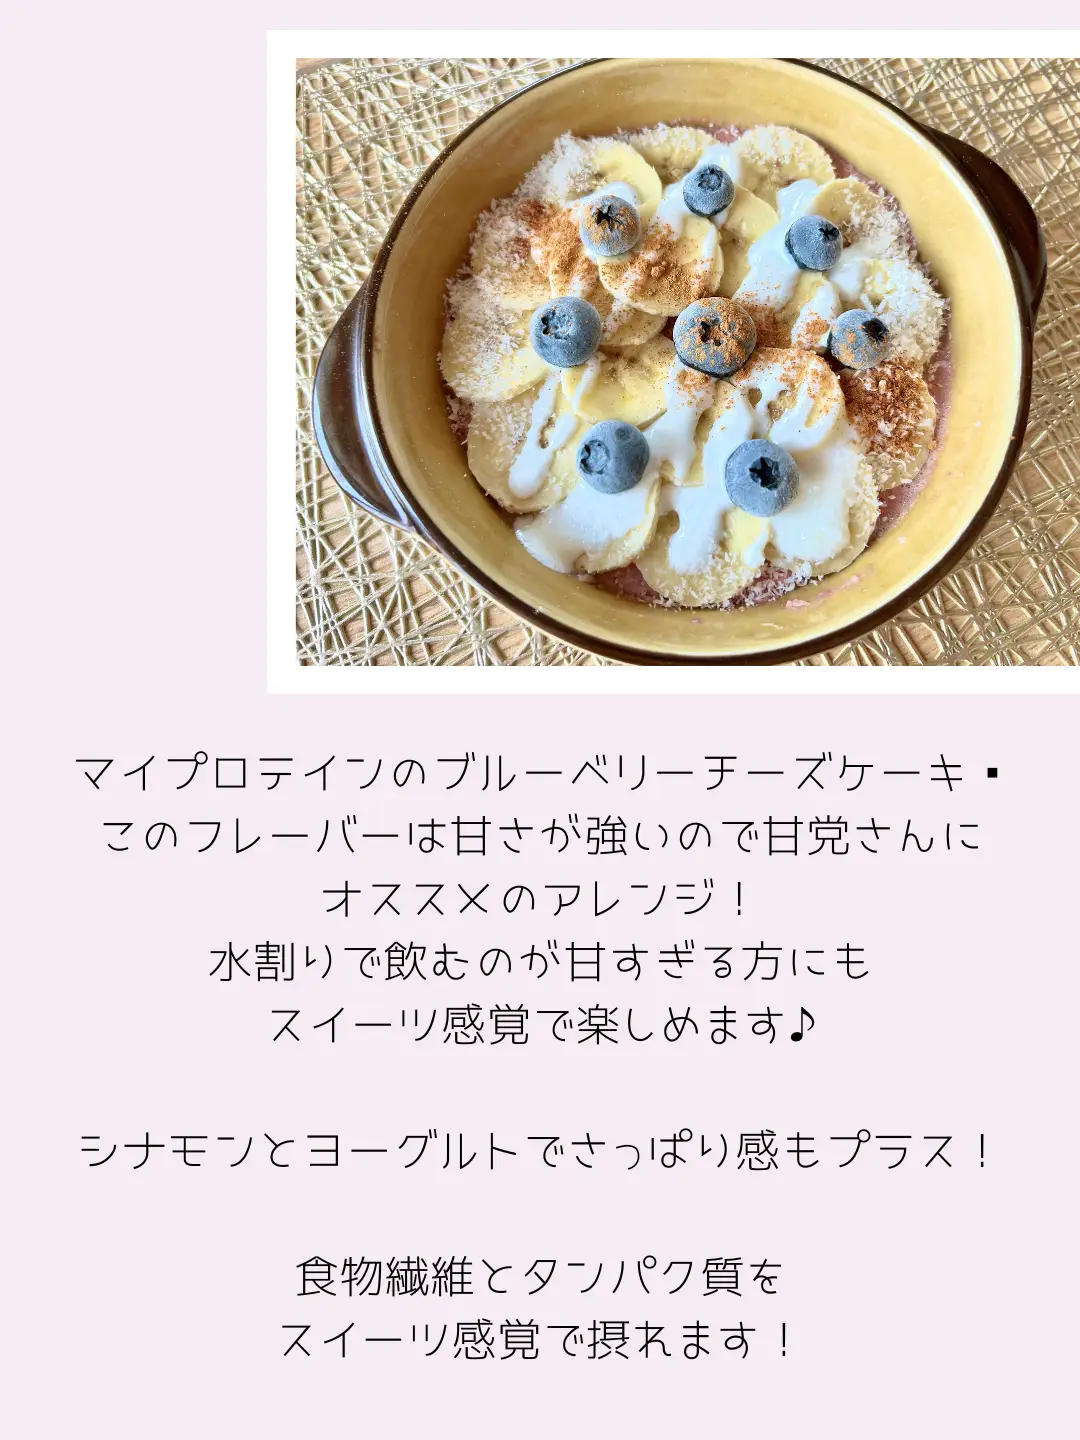 プロテインマグケーキ〉ブルーベリーチーズケーキ   | 𝒉𝒐𝒏𝒆𝒚が投稿したフォトブック | Lemon8